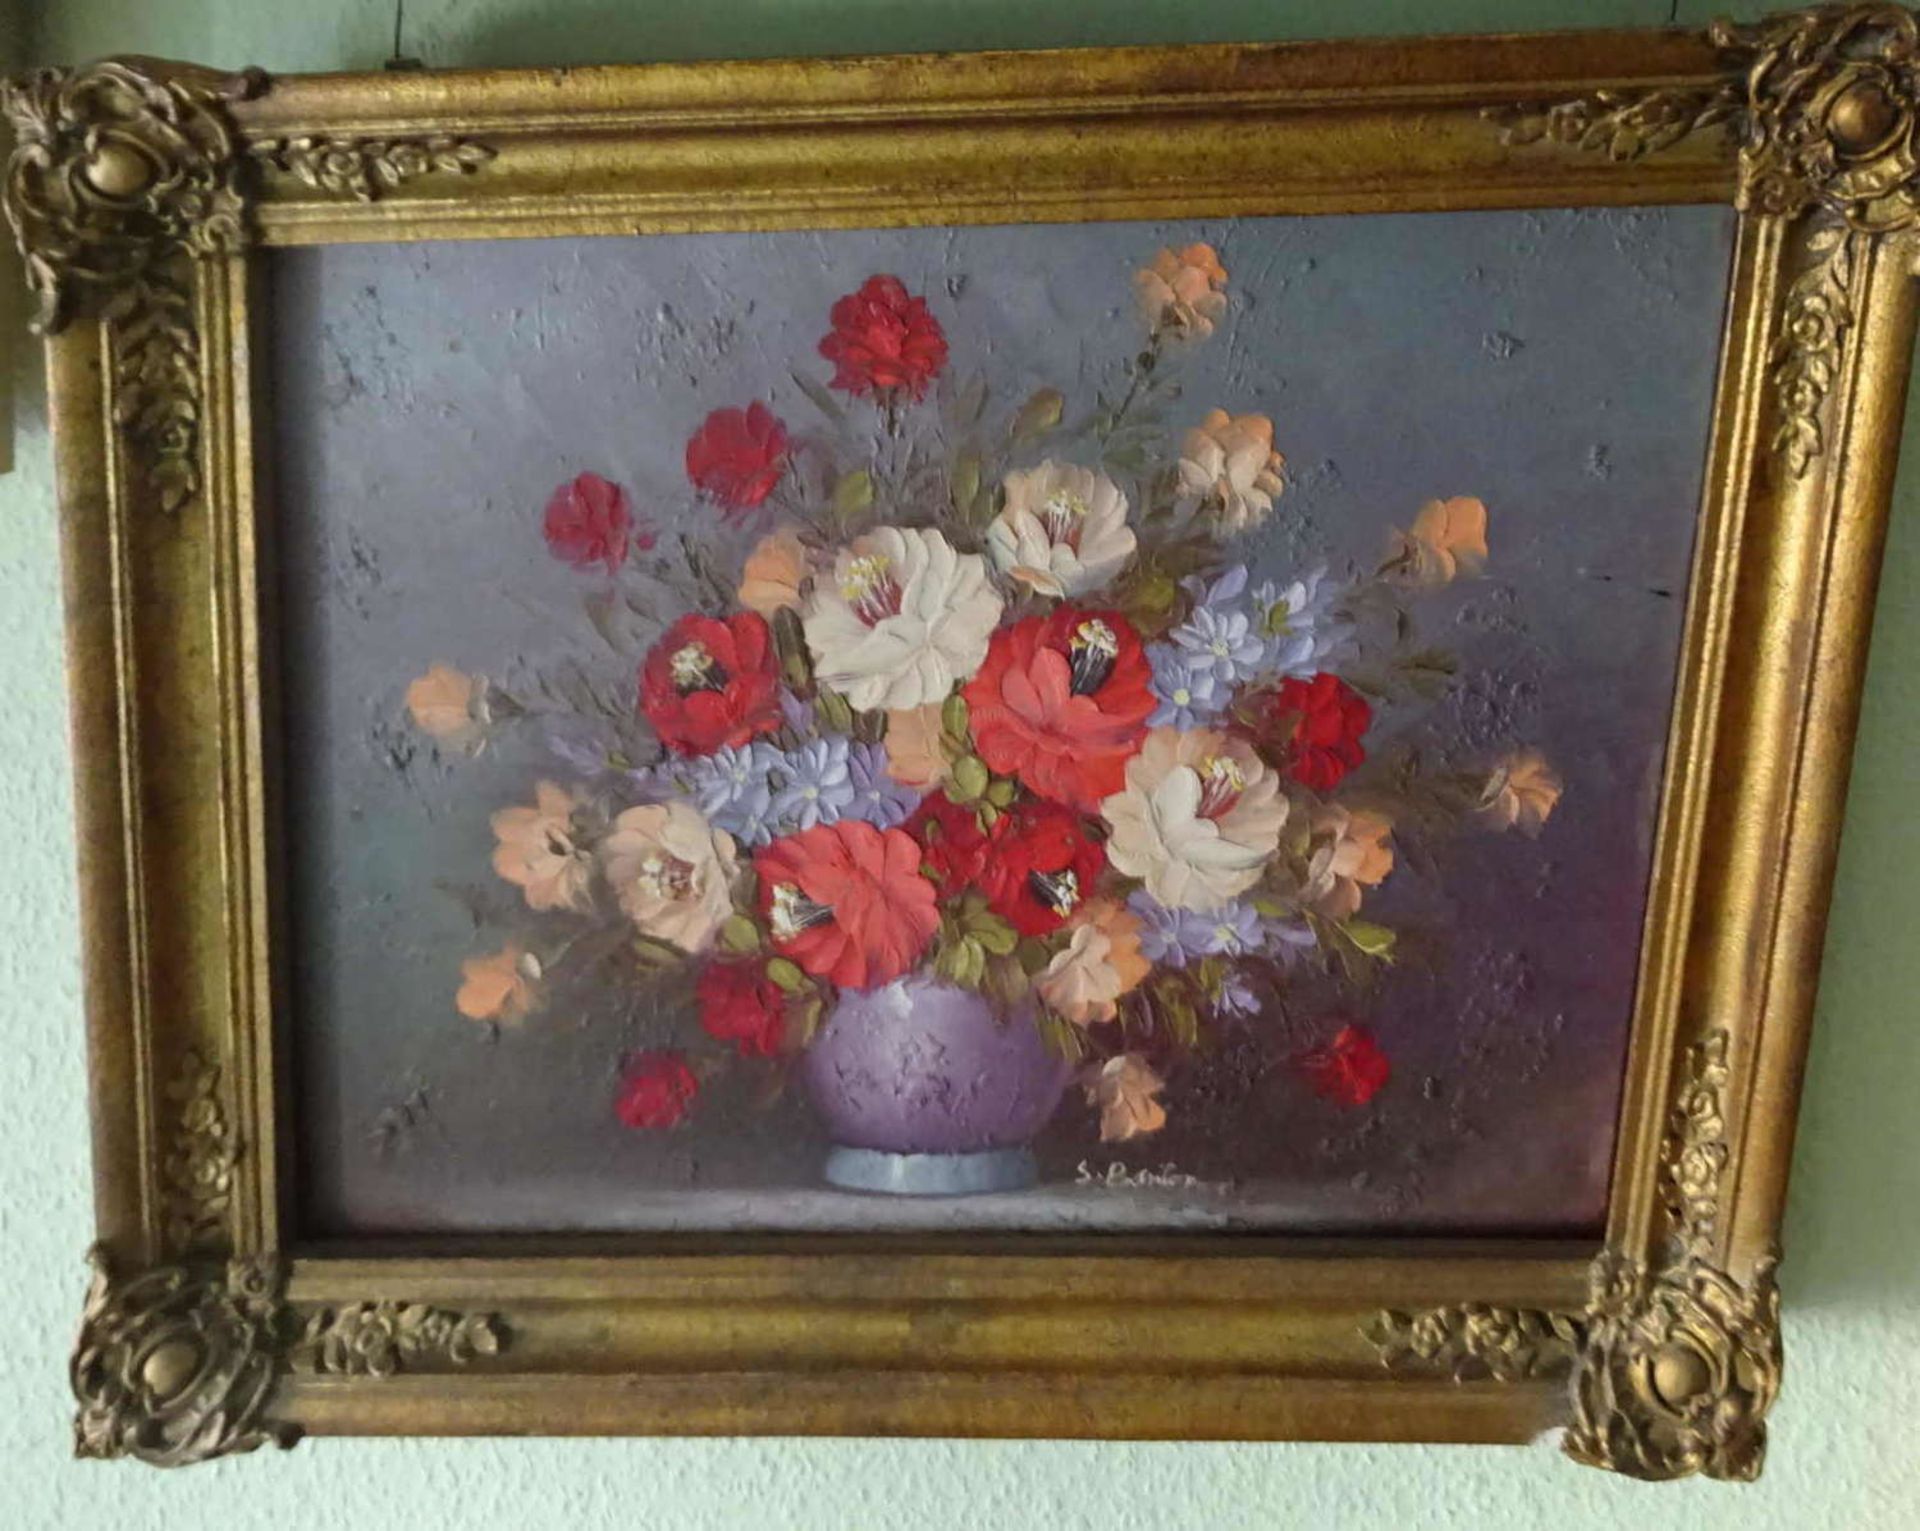 S. Barton. "Blumenarrangement" teilweise mit Farbverlust, in massiven Rahmen. Rechts unten Signatur,